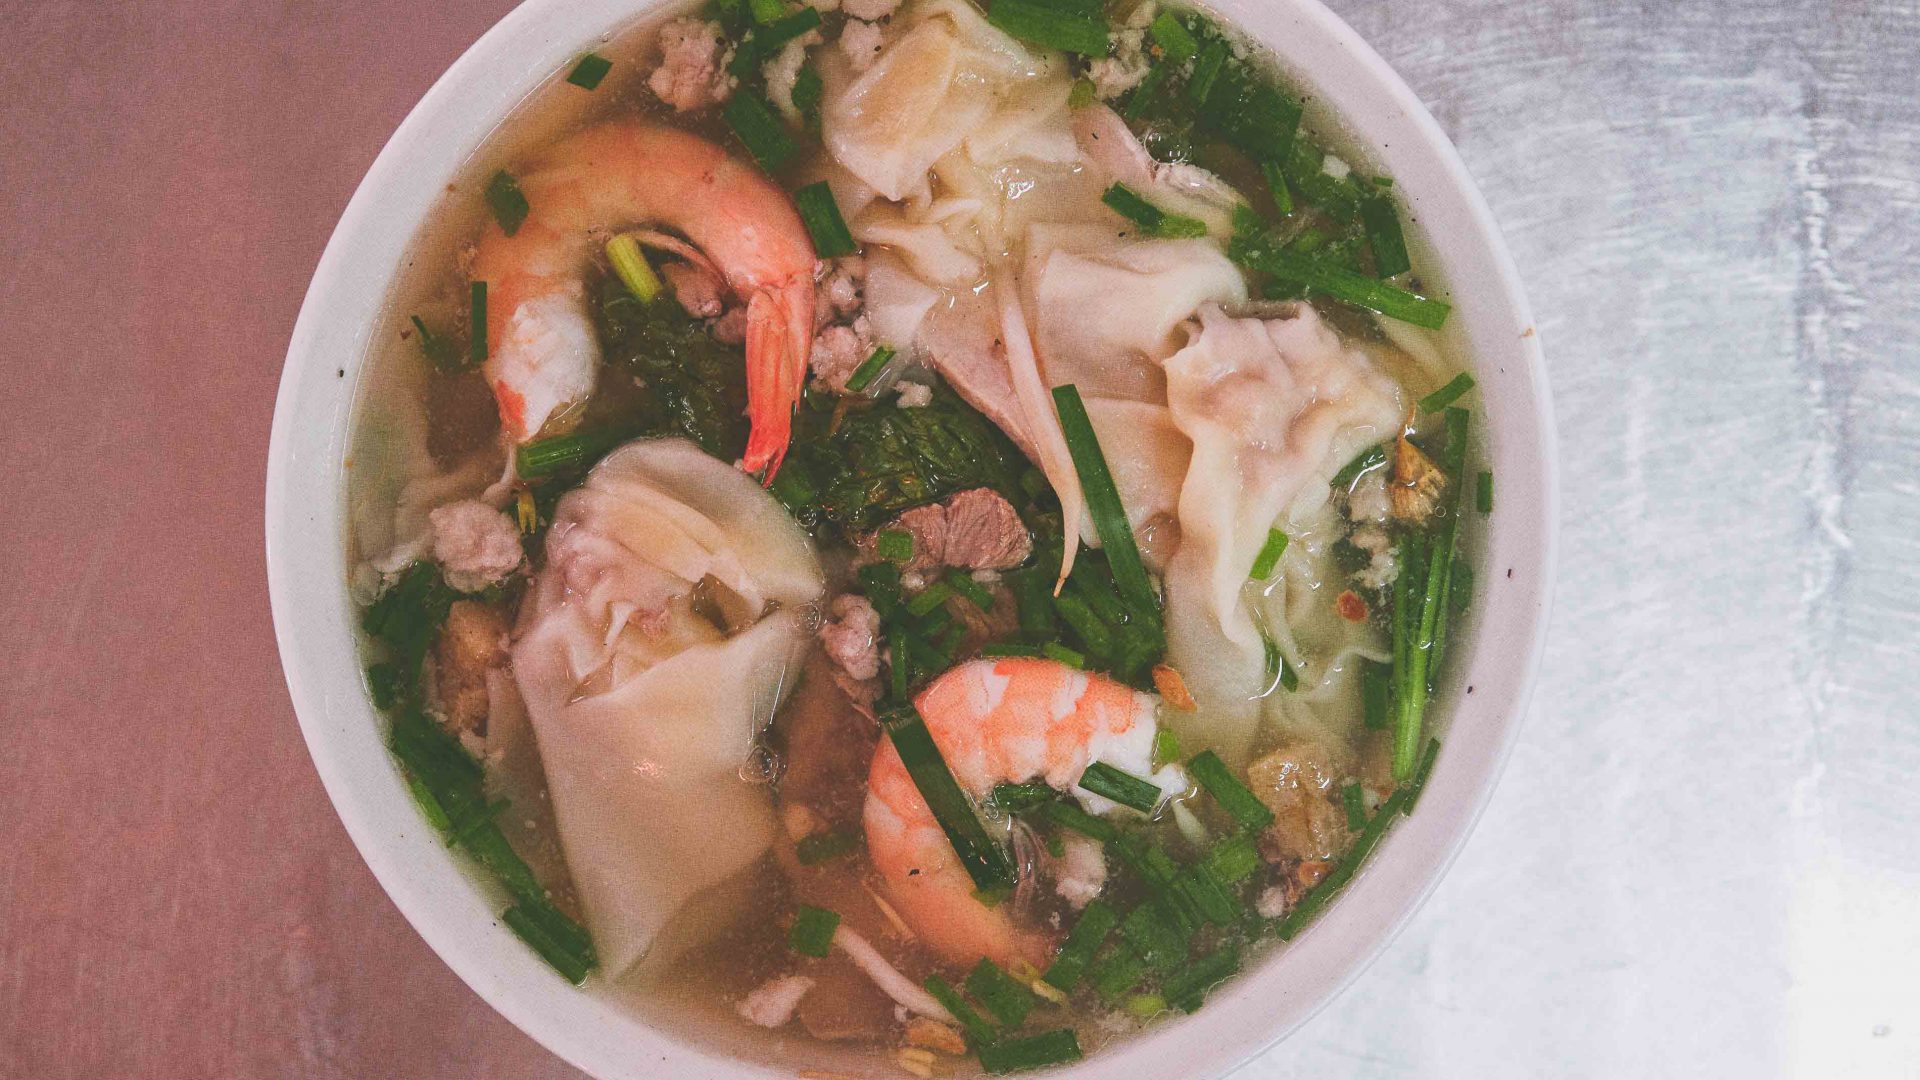 Ho Chi Minh street food: A bowl of hu tieu nam vang noodle soup at Vo Thi Ngoc Nhung’s food cart, Amen.